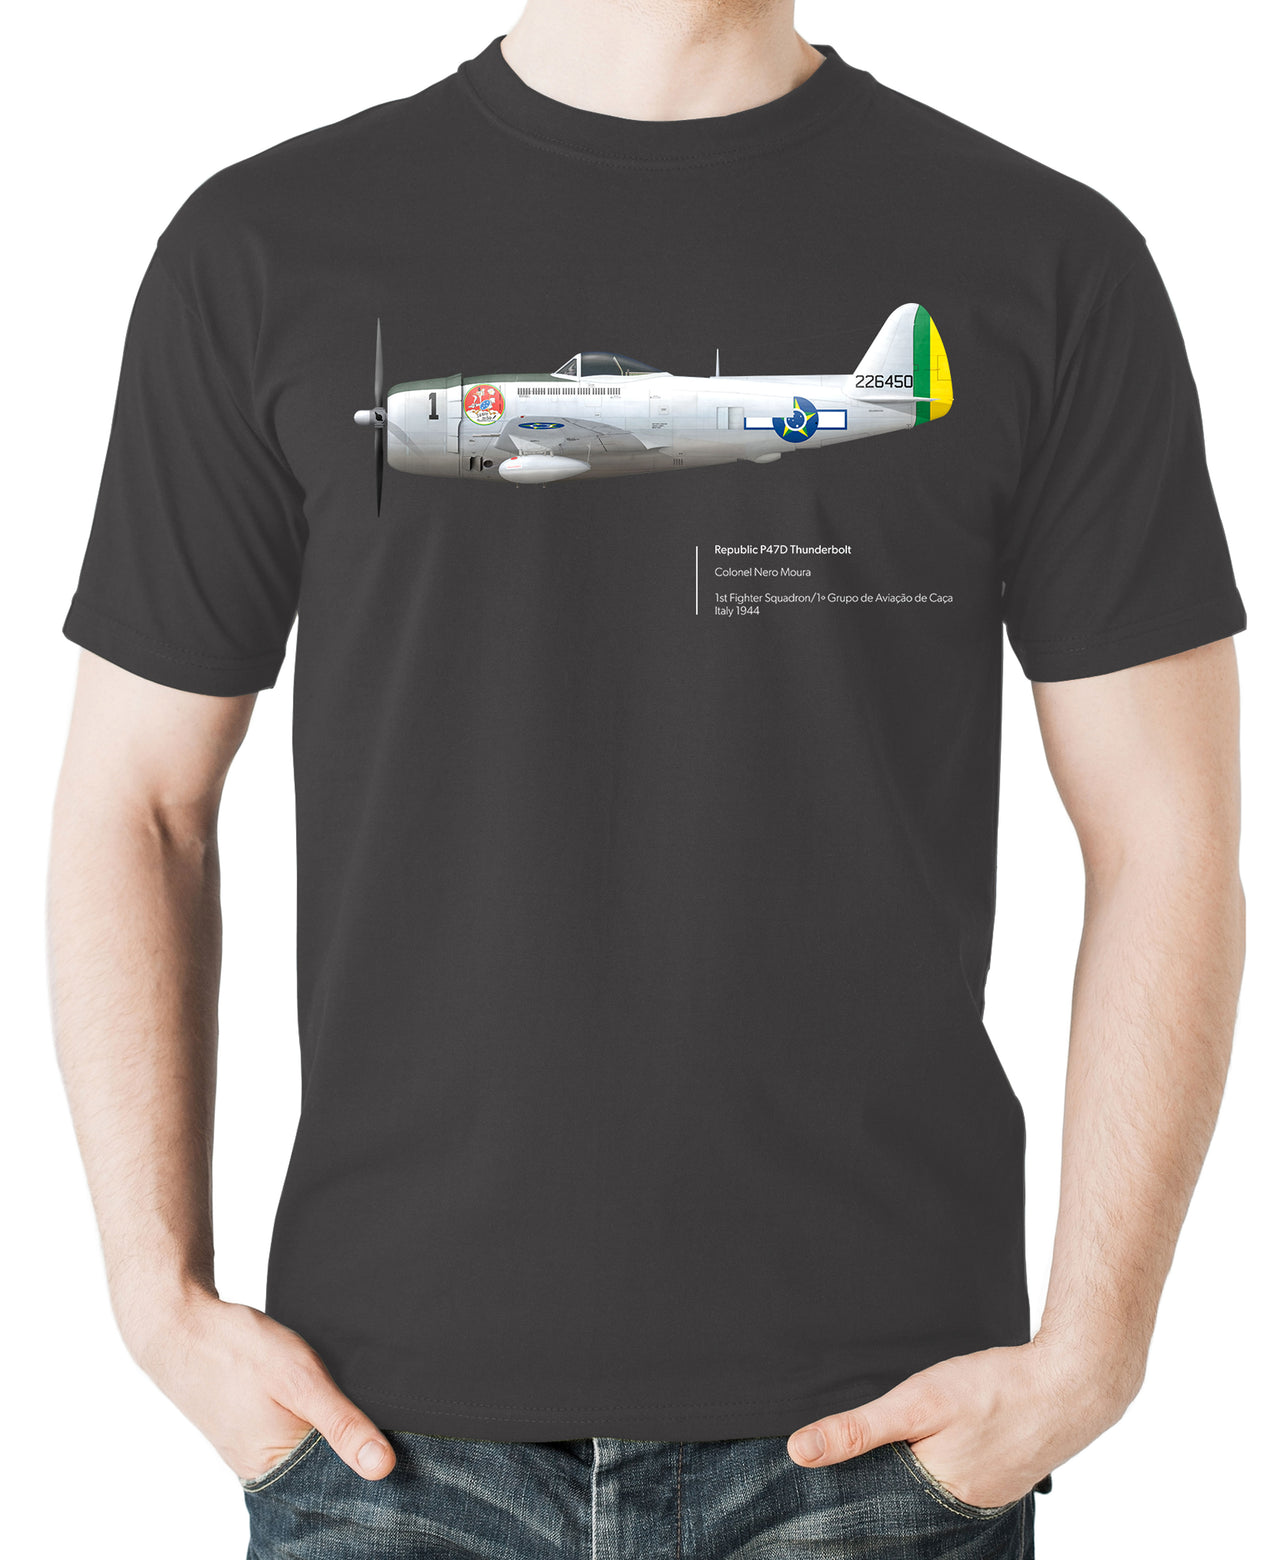 Thunderbolt 493FS - T-shirt